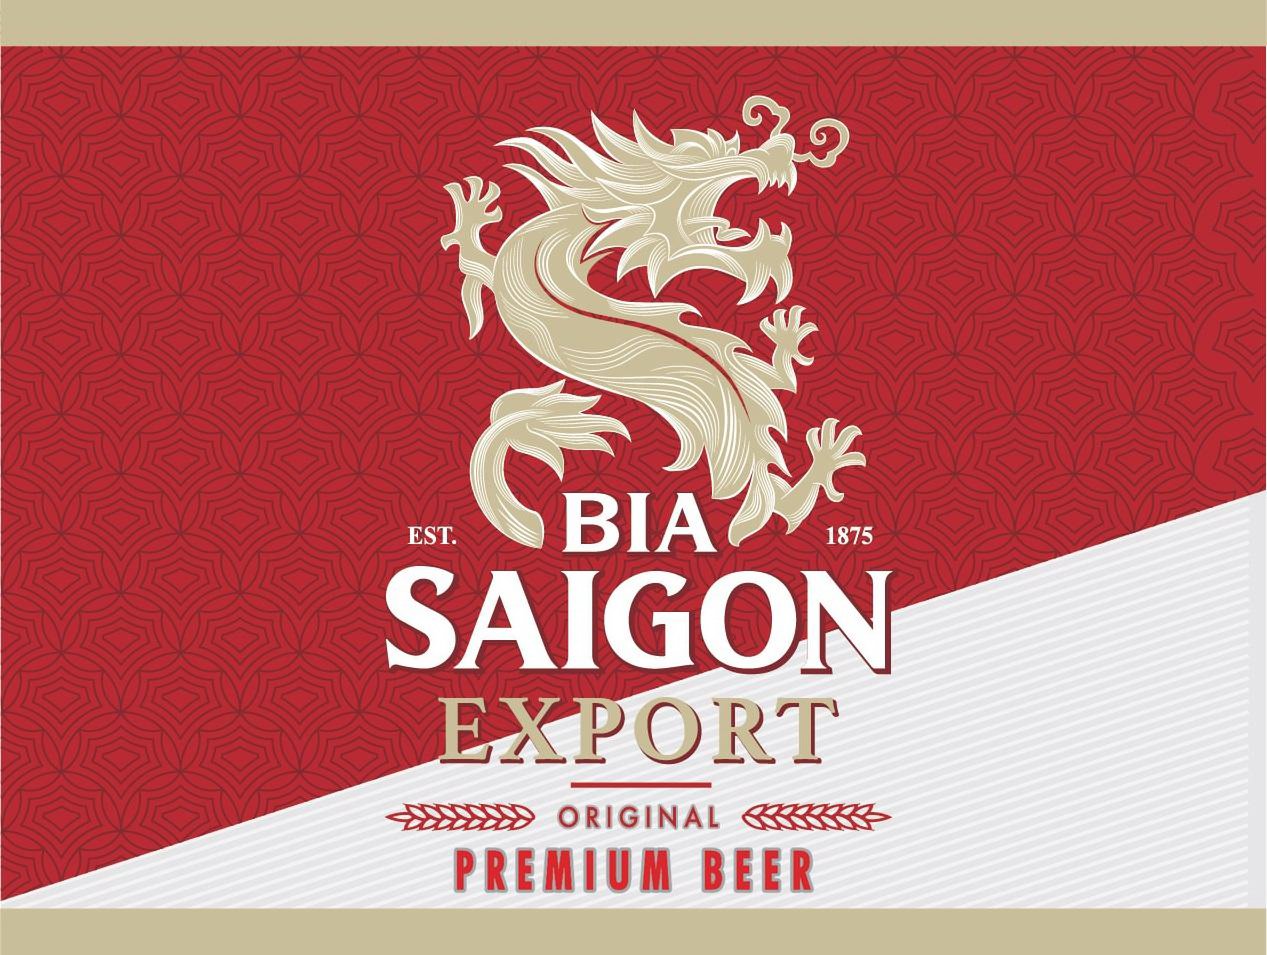  BIA SAIGON EXPORT EST. 1875 ORIGINAL PREMIUM BEER